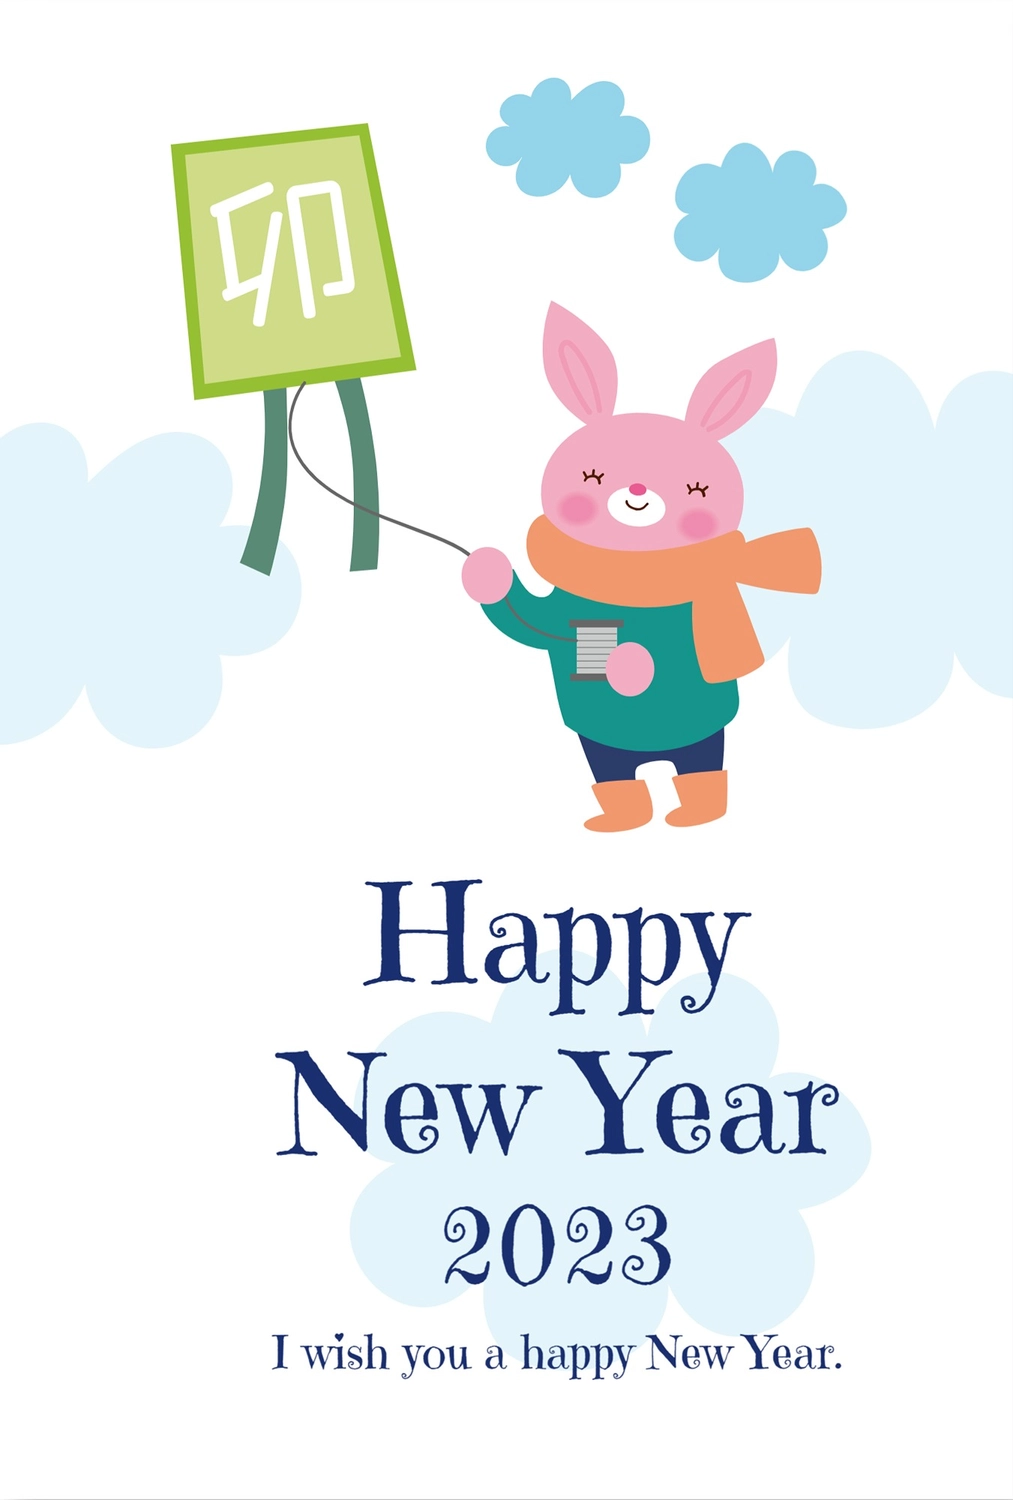 凧あげをするうさぎの年賀状, 동물, 令和, 英文, 새해 카드 템플릿